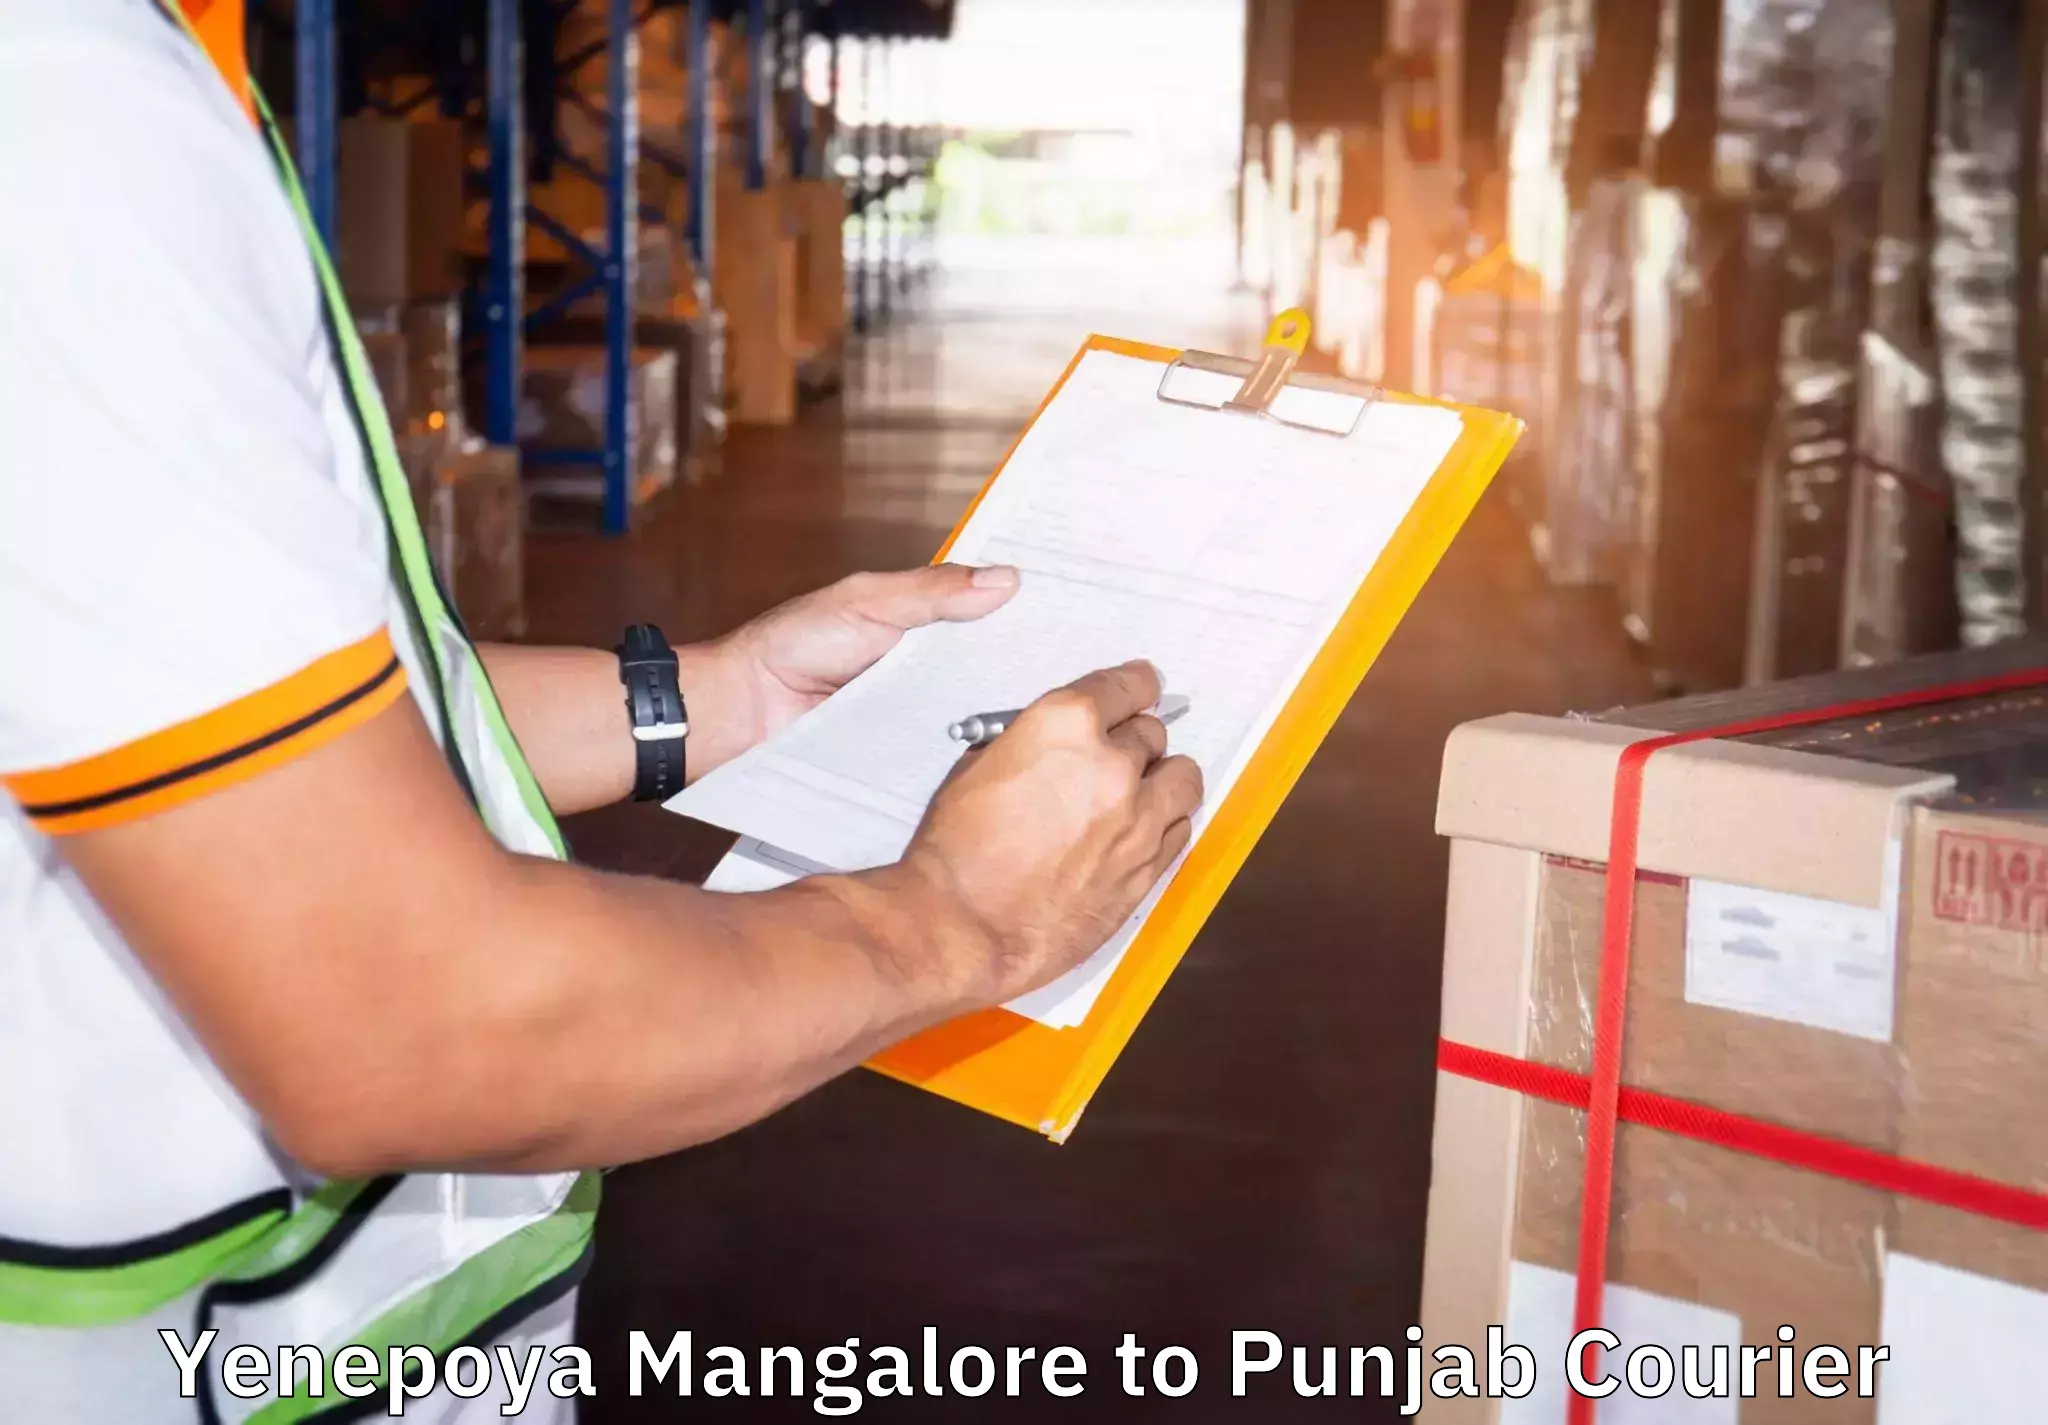 Moving and storage services Yenepoya Mangalore to Malerkotla